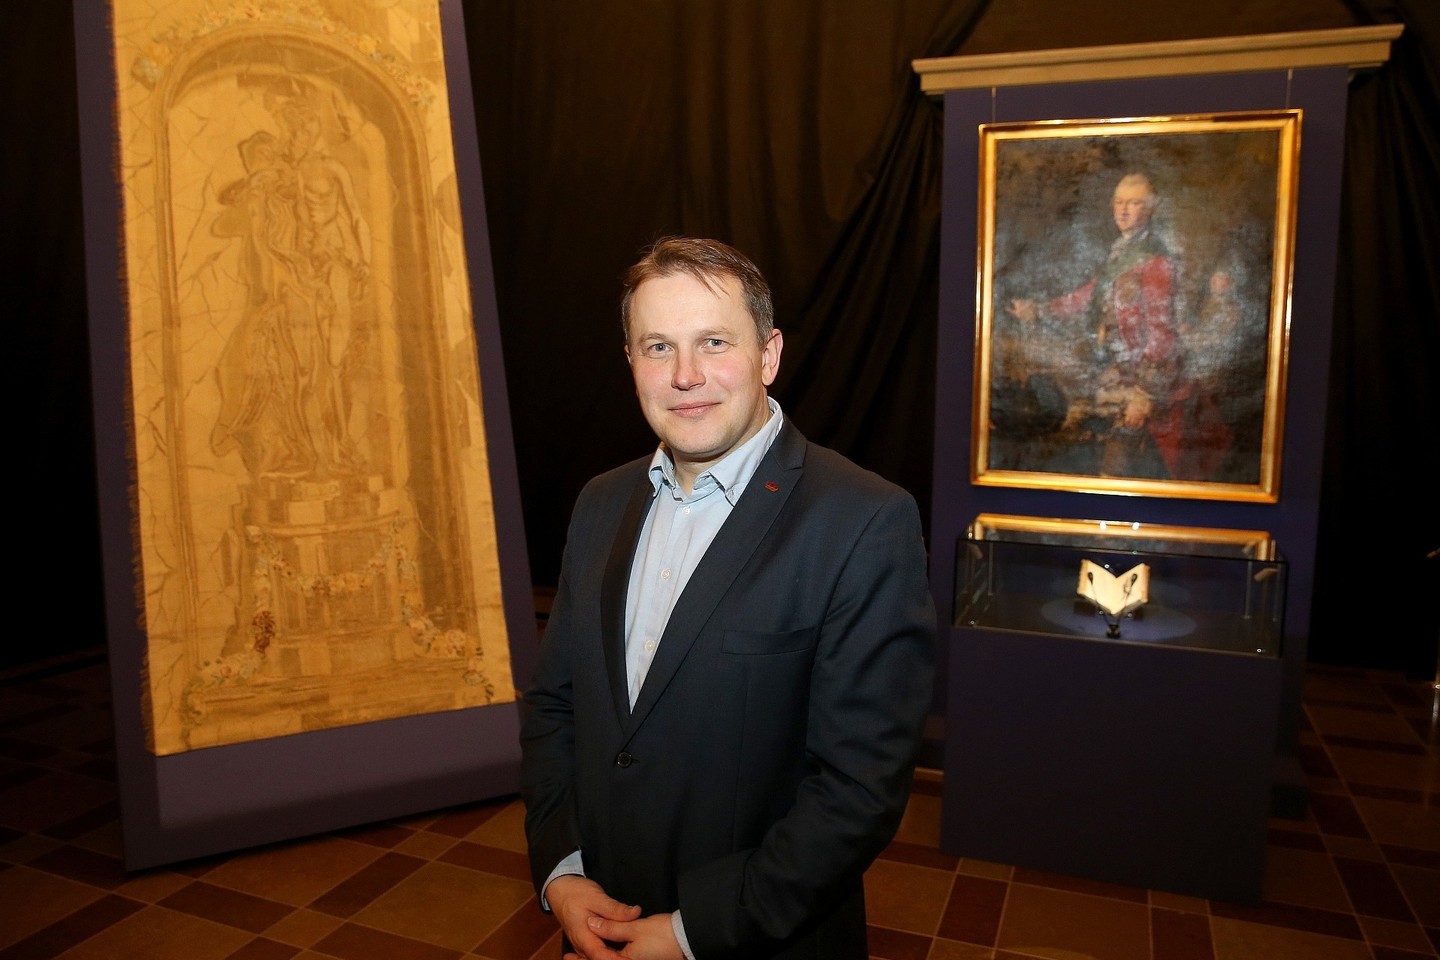 Valdovų rūmų direktorius istorikas Vydas Dolinskas prie parodos eksponatų.<br>R.Danisevičiaus nuotr.